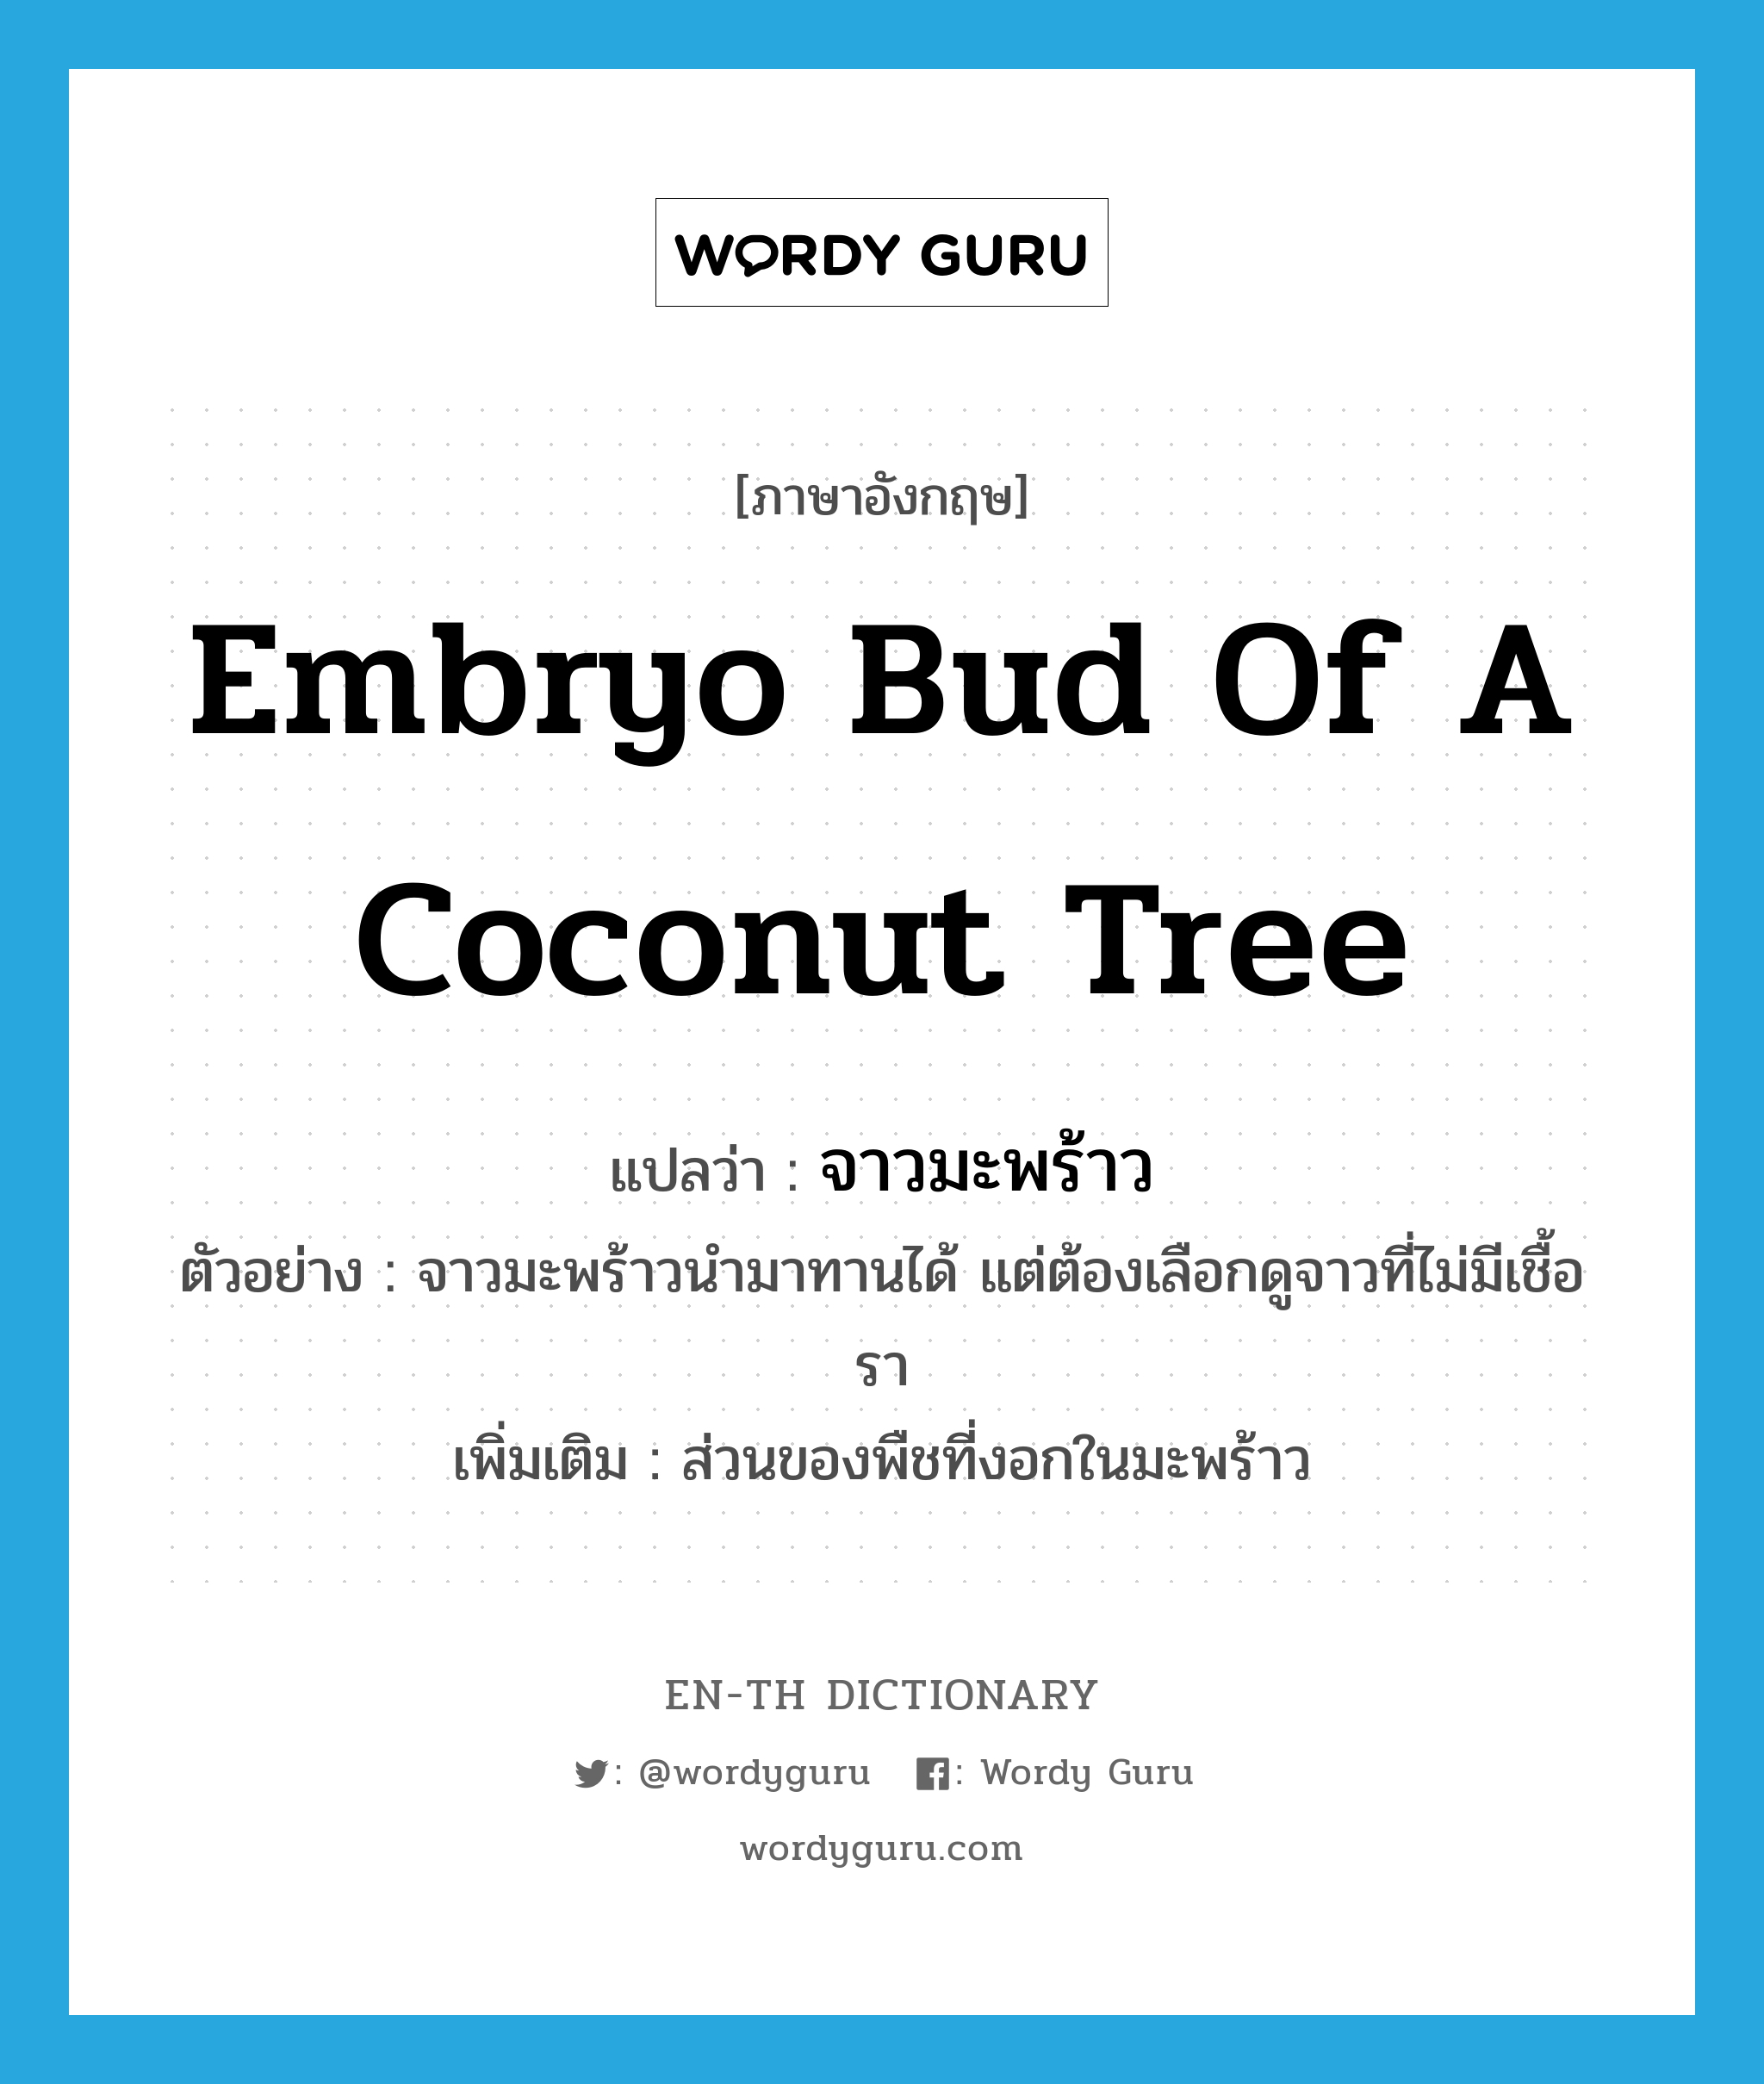 จาวมะพร้าว ภาษาอังกฤษ?, คำศัพท์ภาษาอังกฤษ จาวมะพร้าว แปลว่า embryo bud of a coconut tree ประเภท N ตัวอย่าง จาวมะพร้าวนำมาทานได้ แต่ต้องเลือกดูจาวที่ไม่มีเชื้อรา เพิ่มเติม ส่วนของพืชที่งอกในมะพร้าว หมวด N